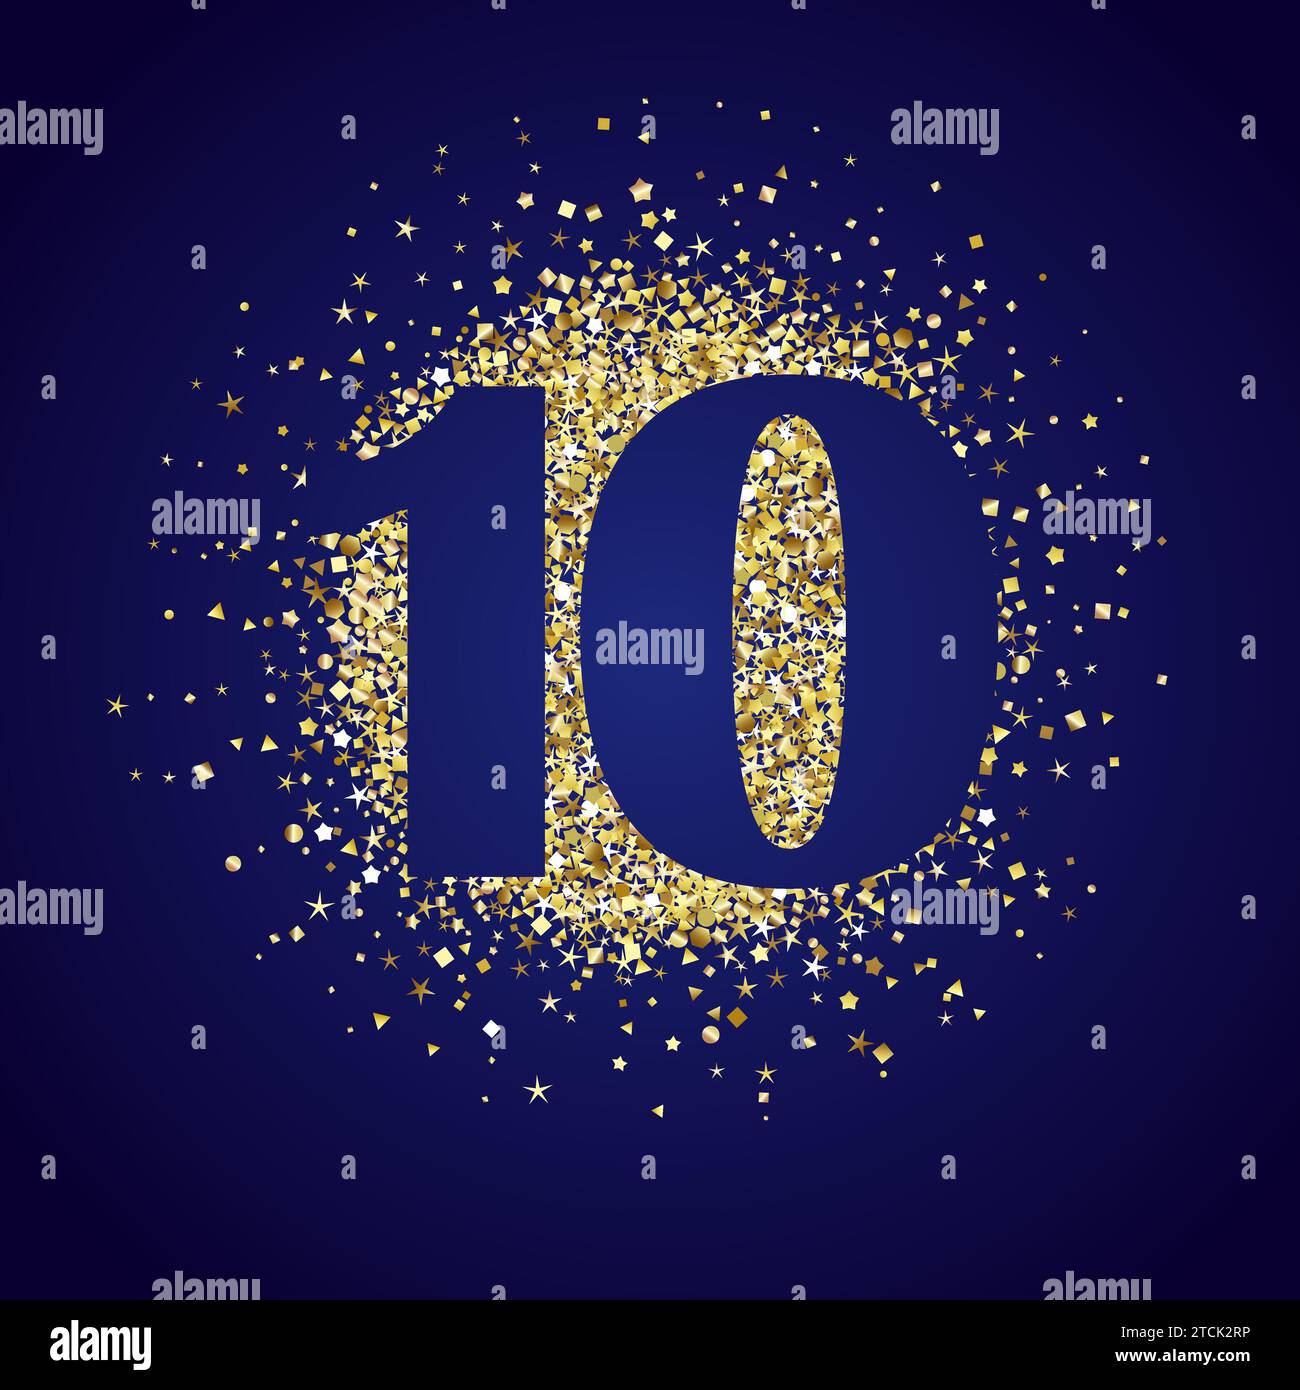 Top-10-Design mit goldenem Hintergrund. Herzliche Grüße zum 10. Jahrestag. Isolierte Goldkugel und Nummer 10 mit blauem Verlauf. Kreative Dekoration. Stock Vektor